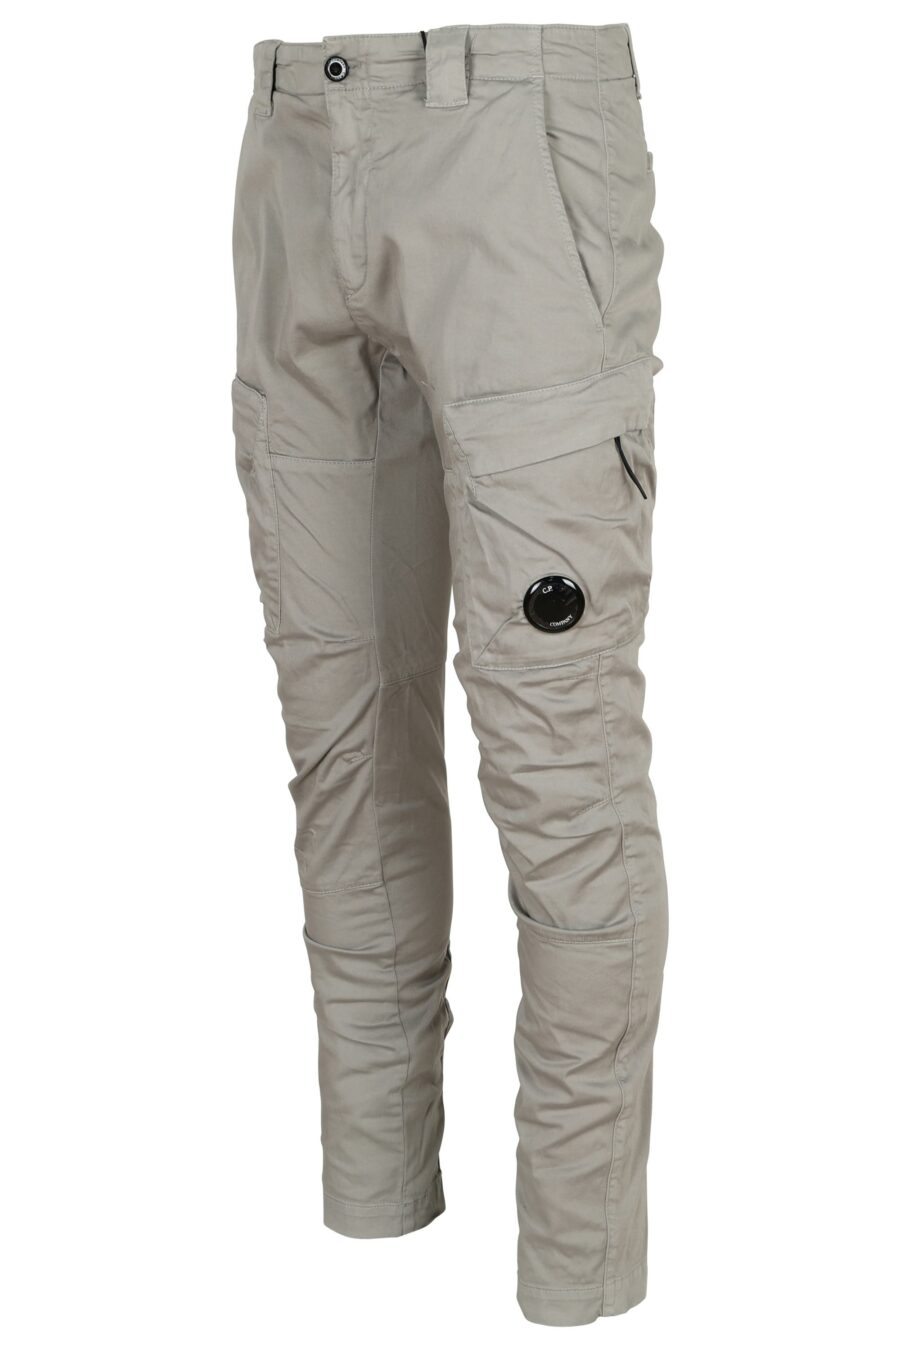 Pantalón gris estilo cargo con logo lente - 7620943722895 1